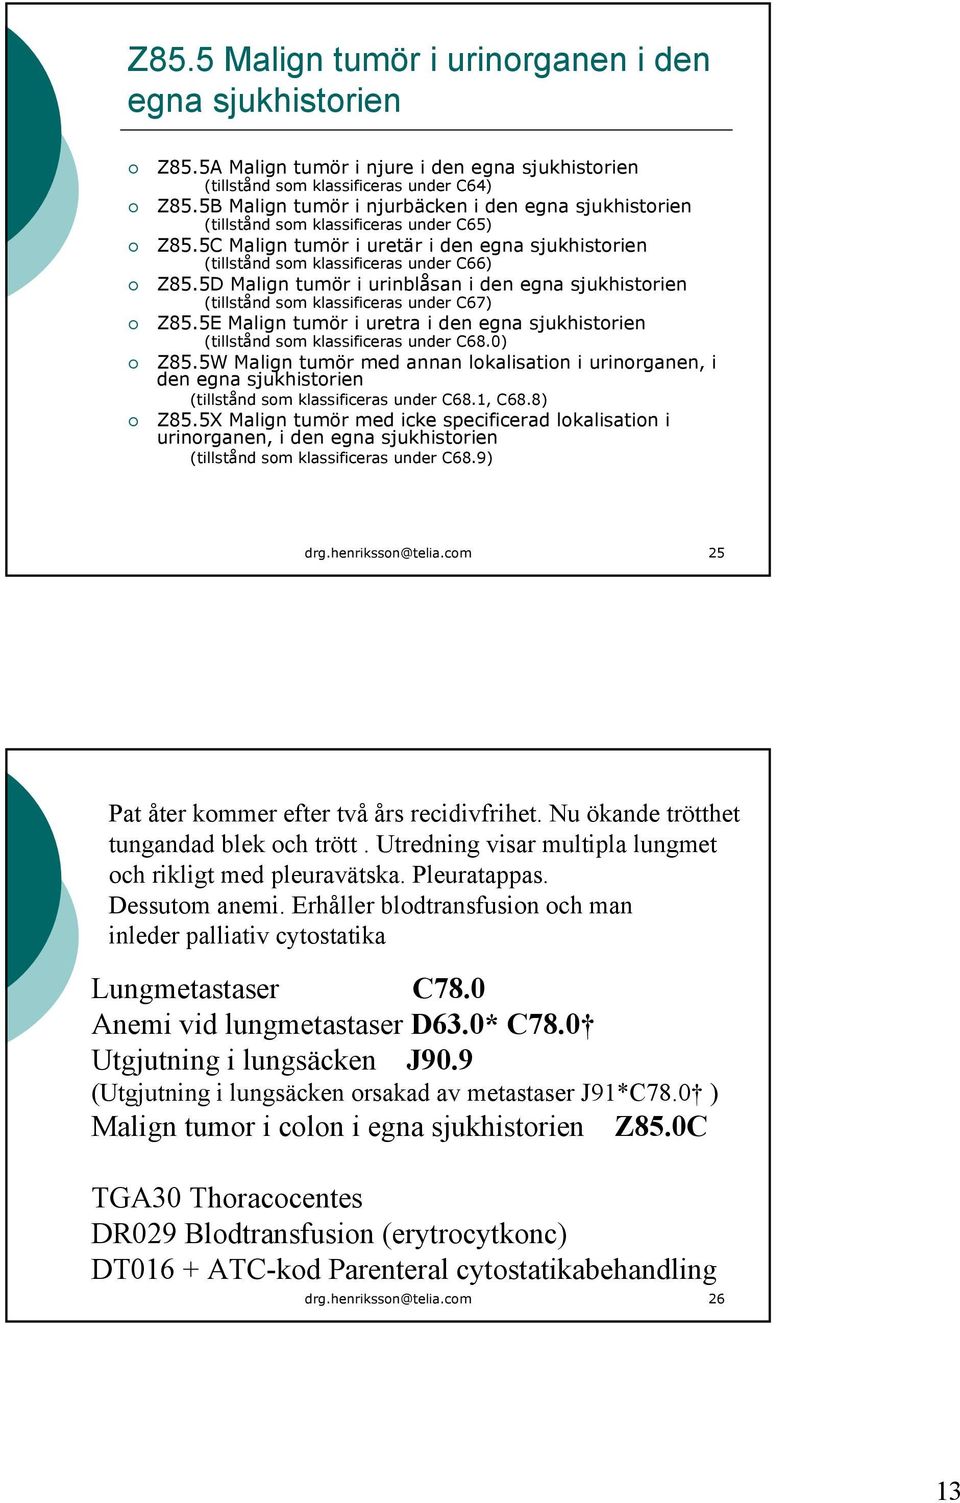 5D Malign tumör i urinblåsan i den egna sjukhistorien (tillstånd som klassificeras under C67) Z85.5E Malign tumör i uretra i den egna sjukhistorien (tillstånd som klassificeras under C68.0) Z85.